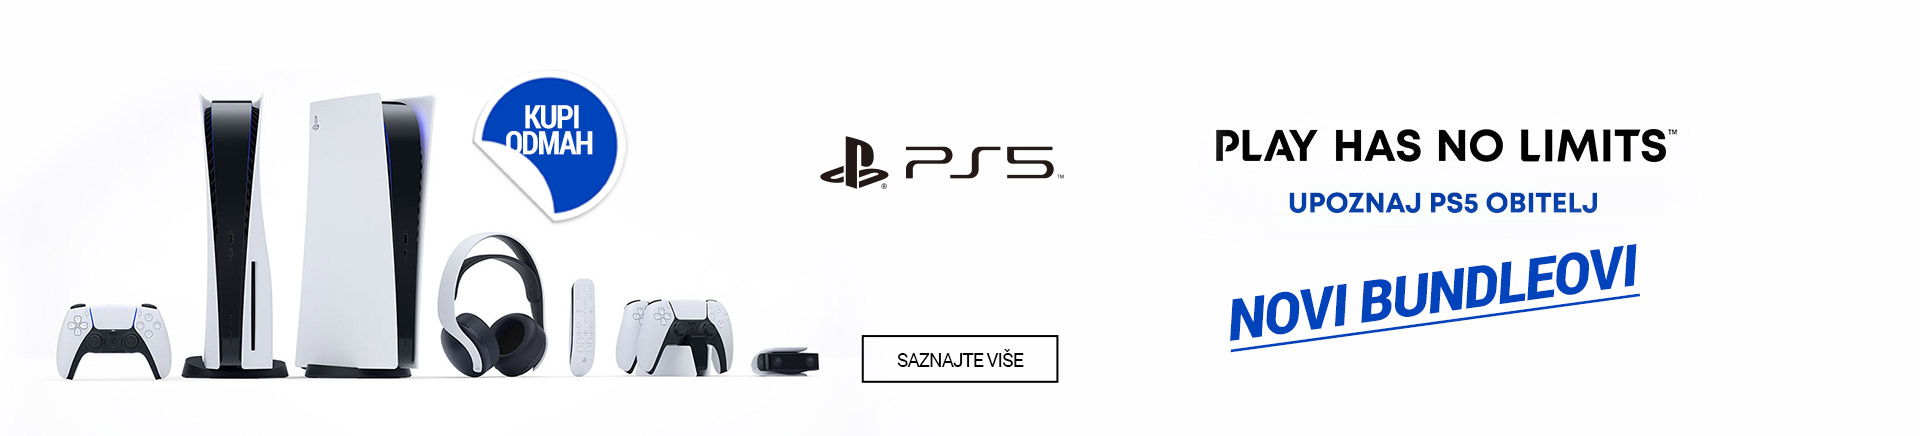 PS5 - novi bundleovi!